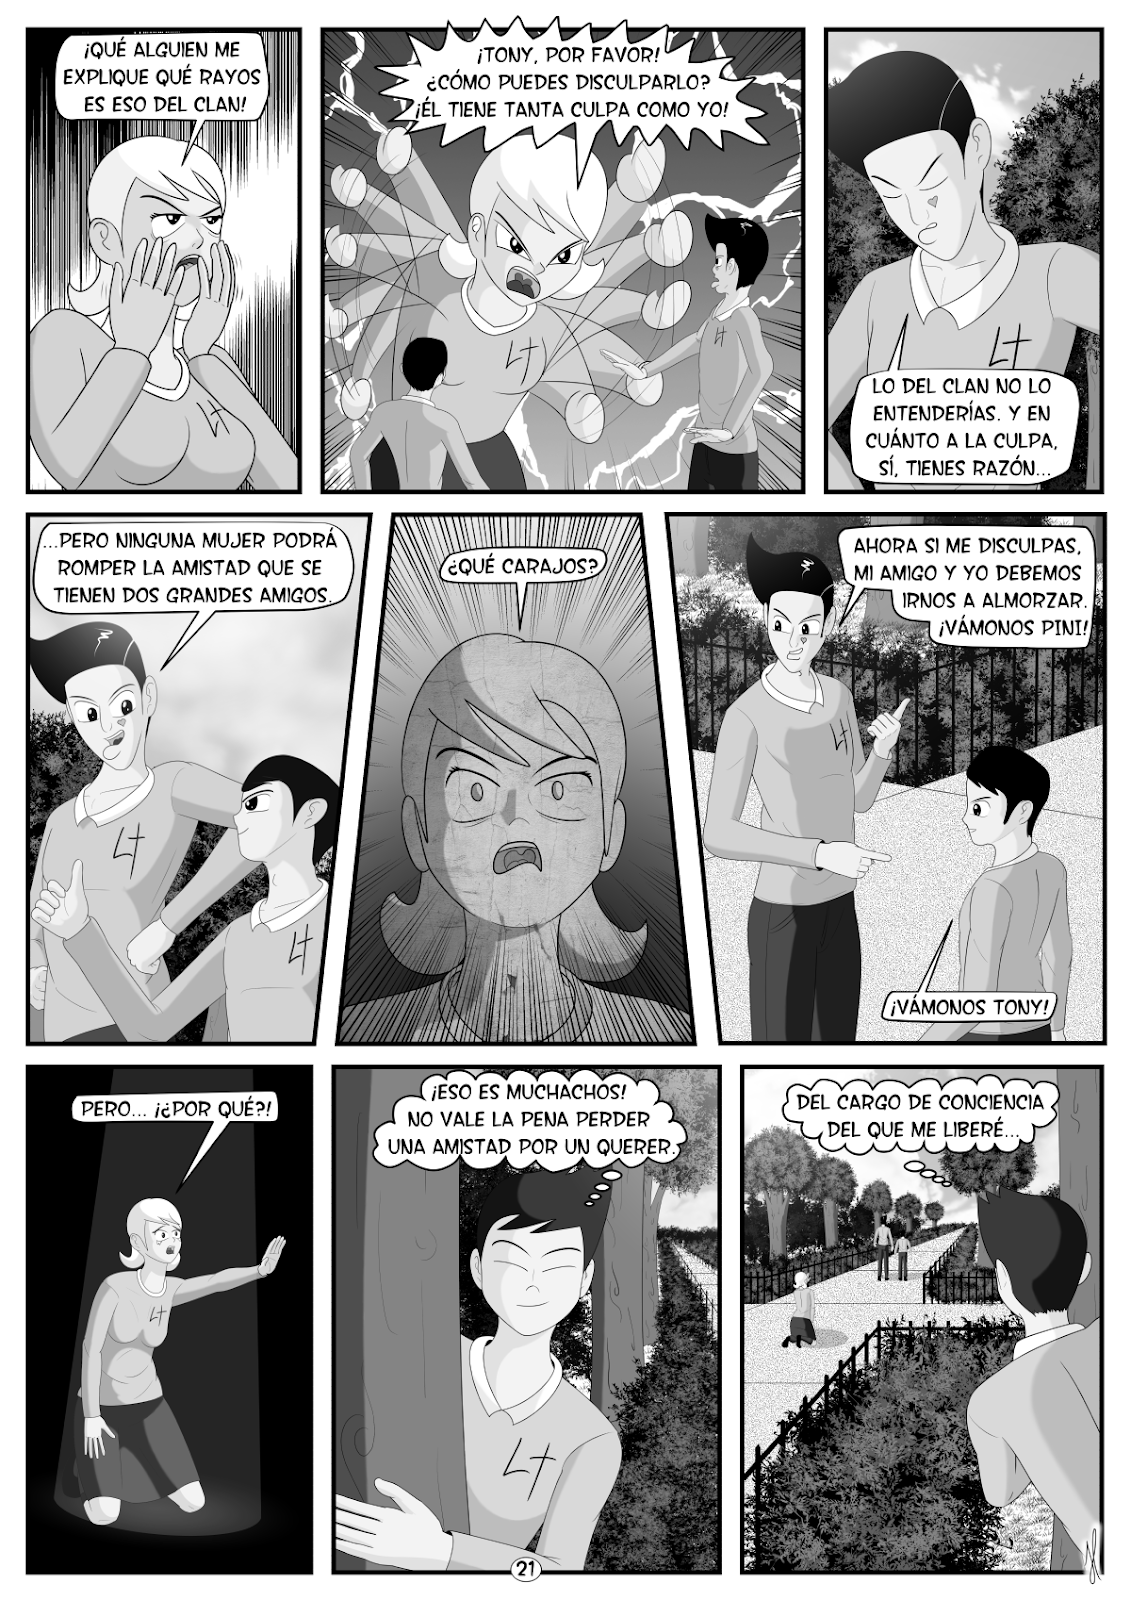 tony-sali-con-tu-mujer-pagina-21